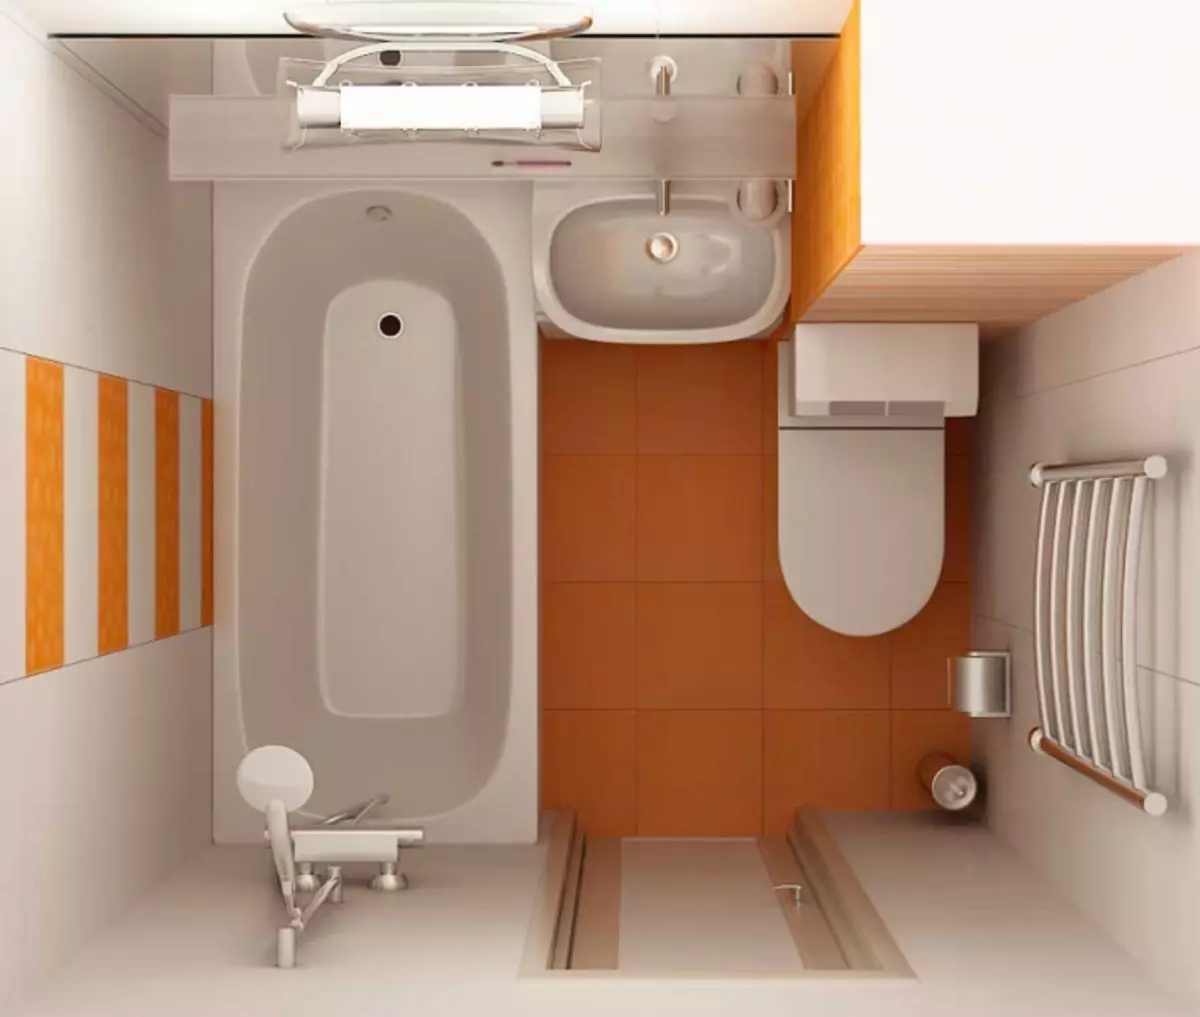 Khruschev3 मा बाथरूम डिजाइन: सक्षम दृष्टिकोण र सुविधाहरू